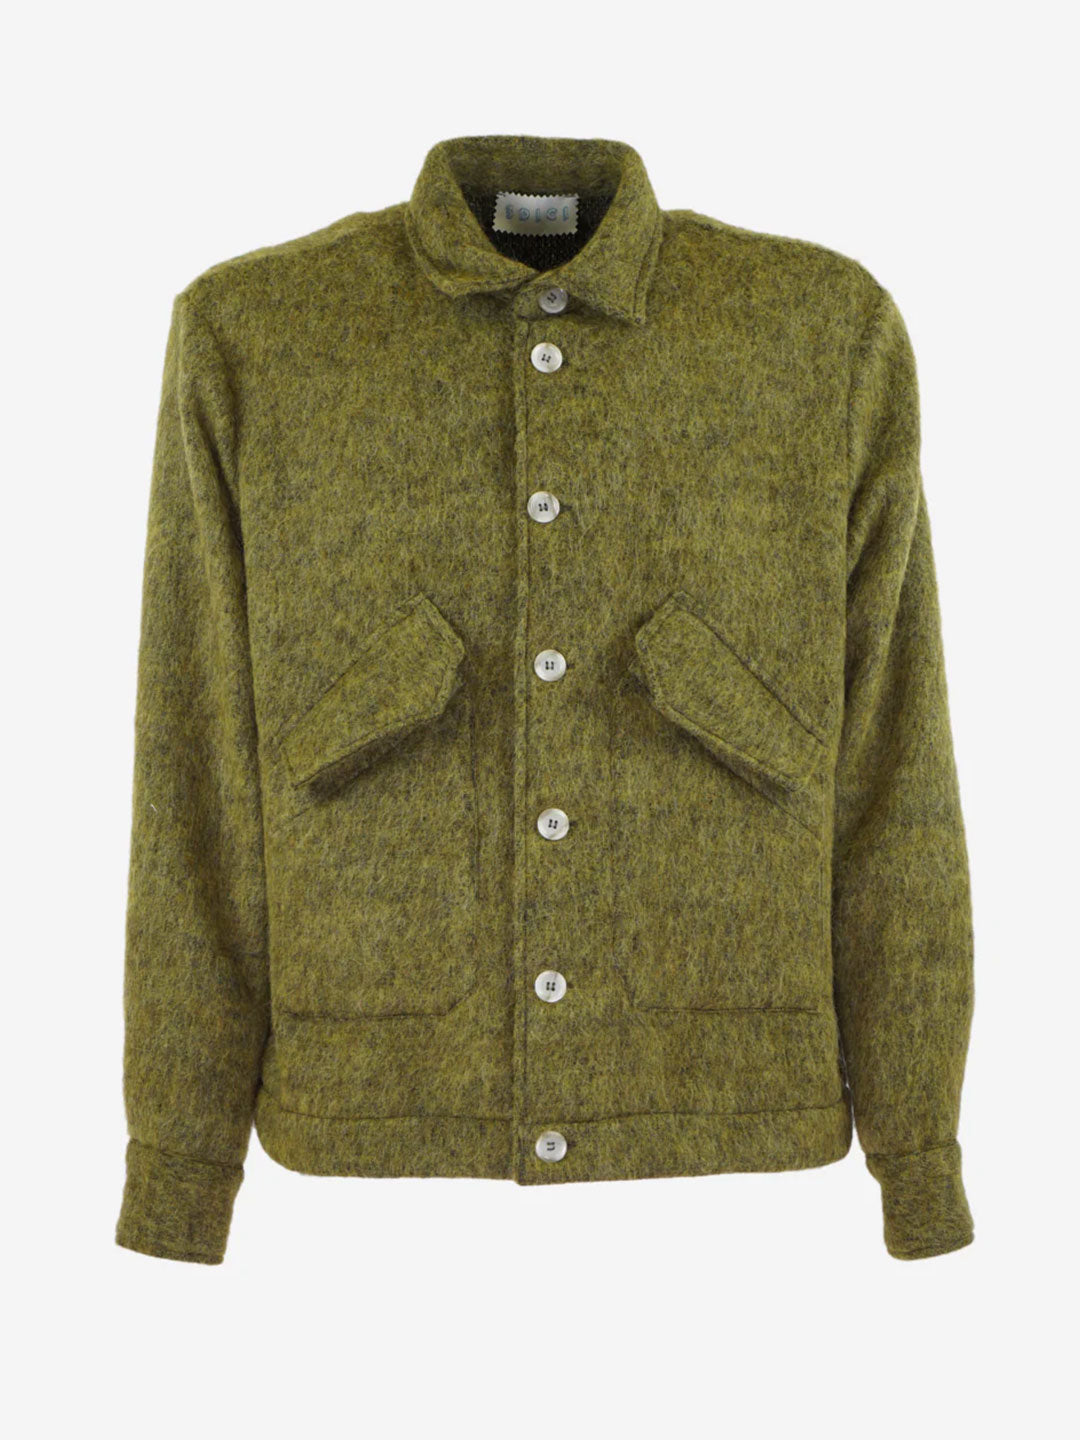 3Dici camicia verde in misto lana